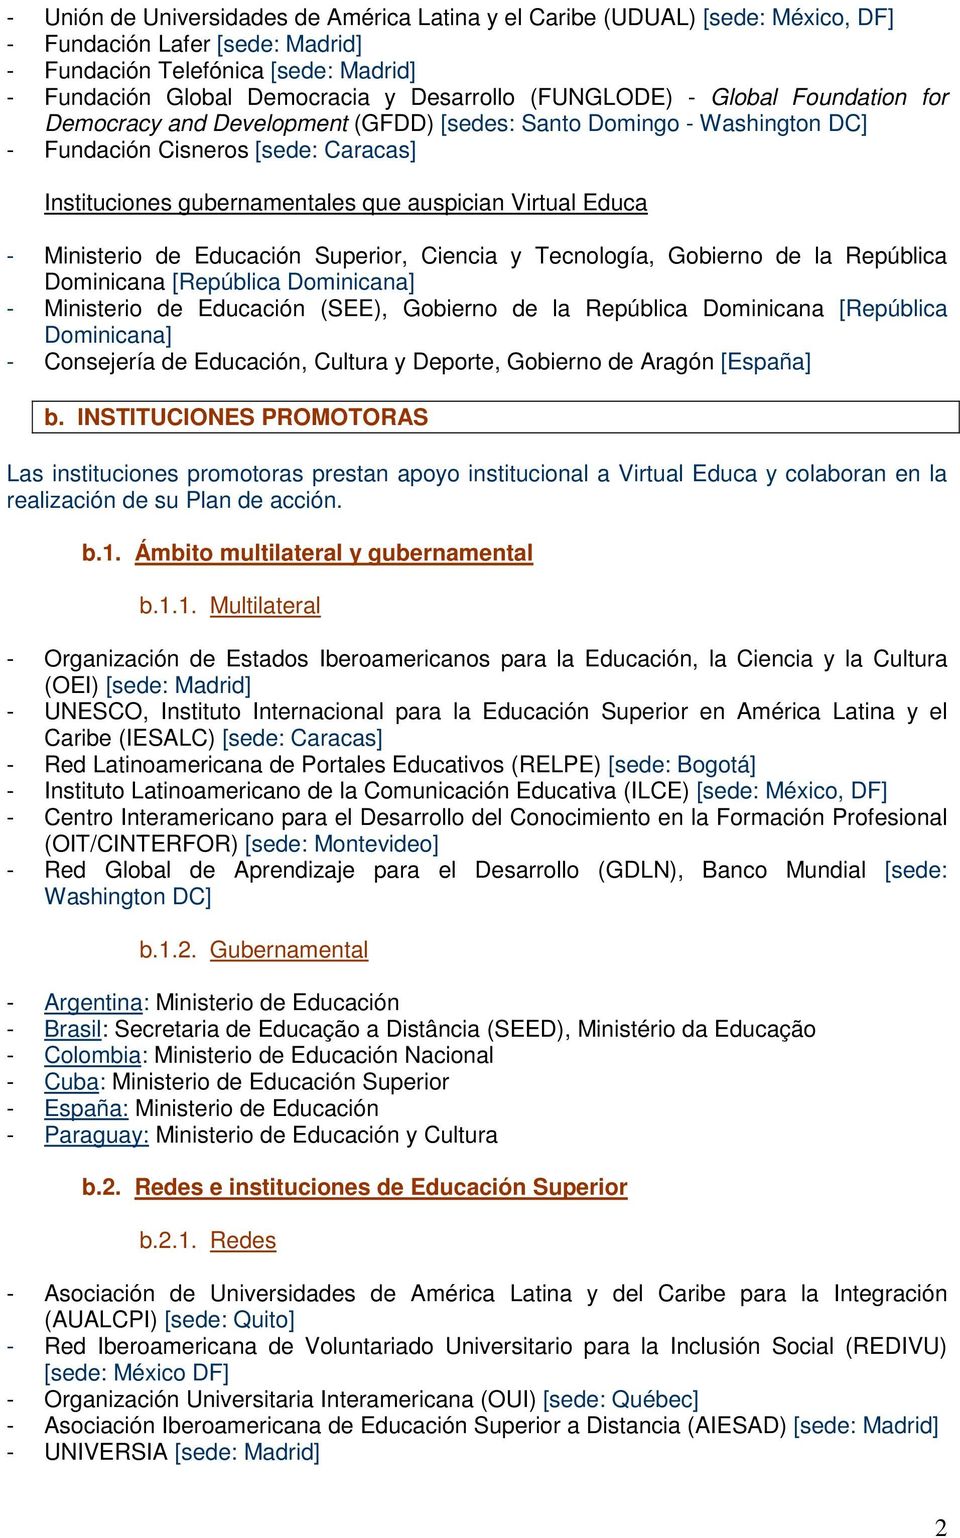 Educa - Ministerio de Educación Superior, Ciencia y Tecnología, Gobierno de la República Dominicana [República Dominicana] - Ministerio de Educación (SEE), Gobierno de la República Dominicana